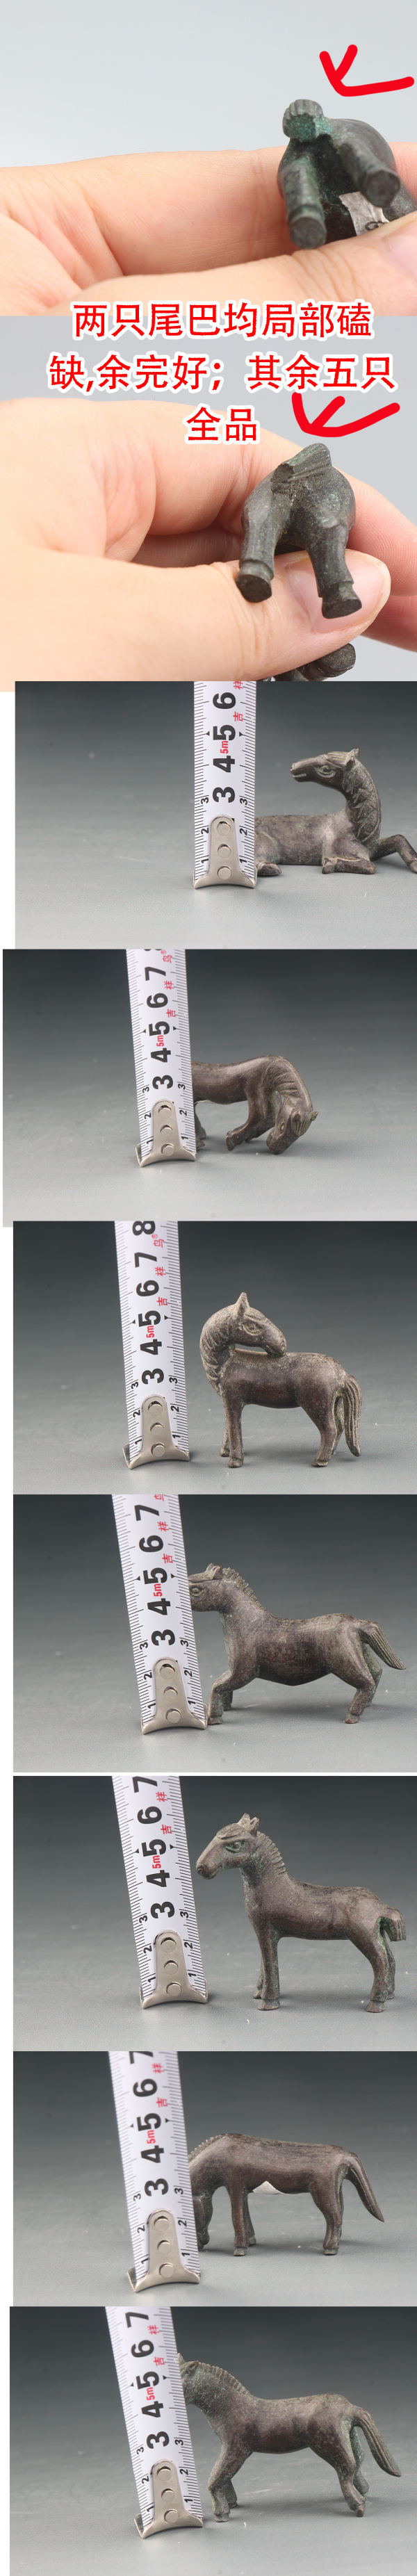 古玩铜器【6800-06】民国 铜制马雕件一组拍卖，当前价格2980元